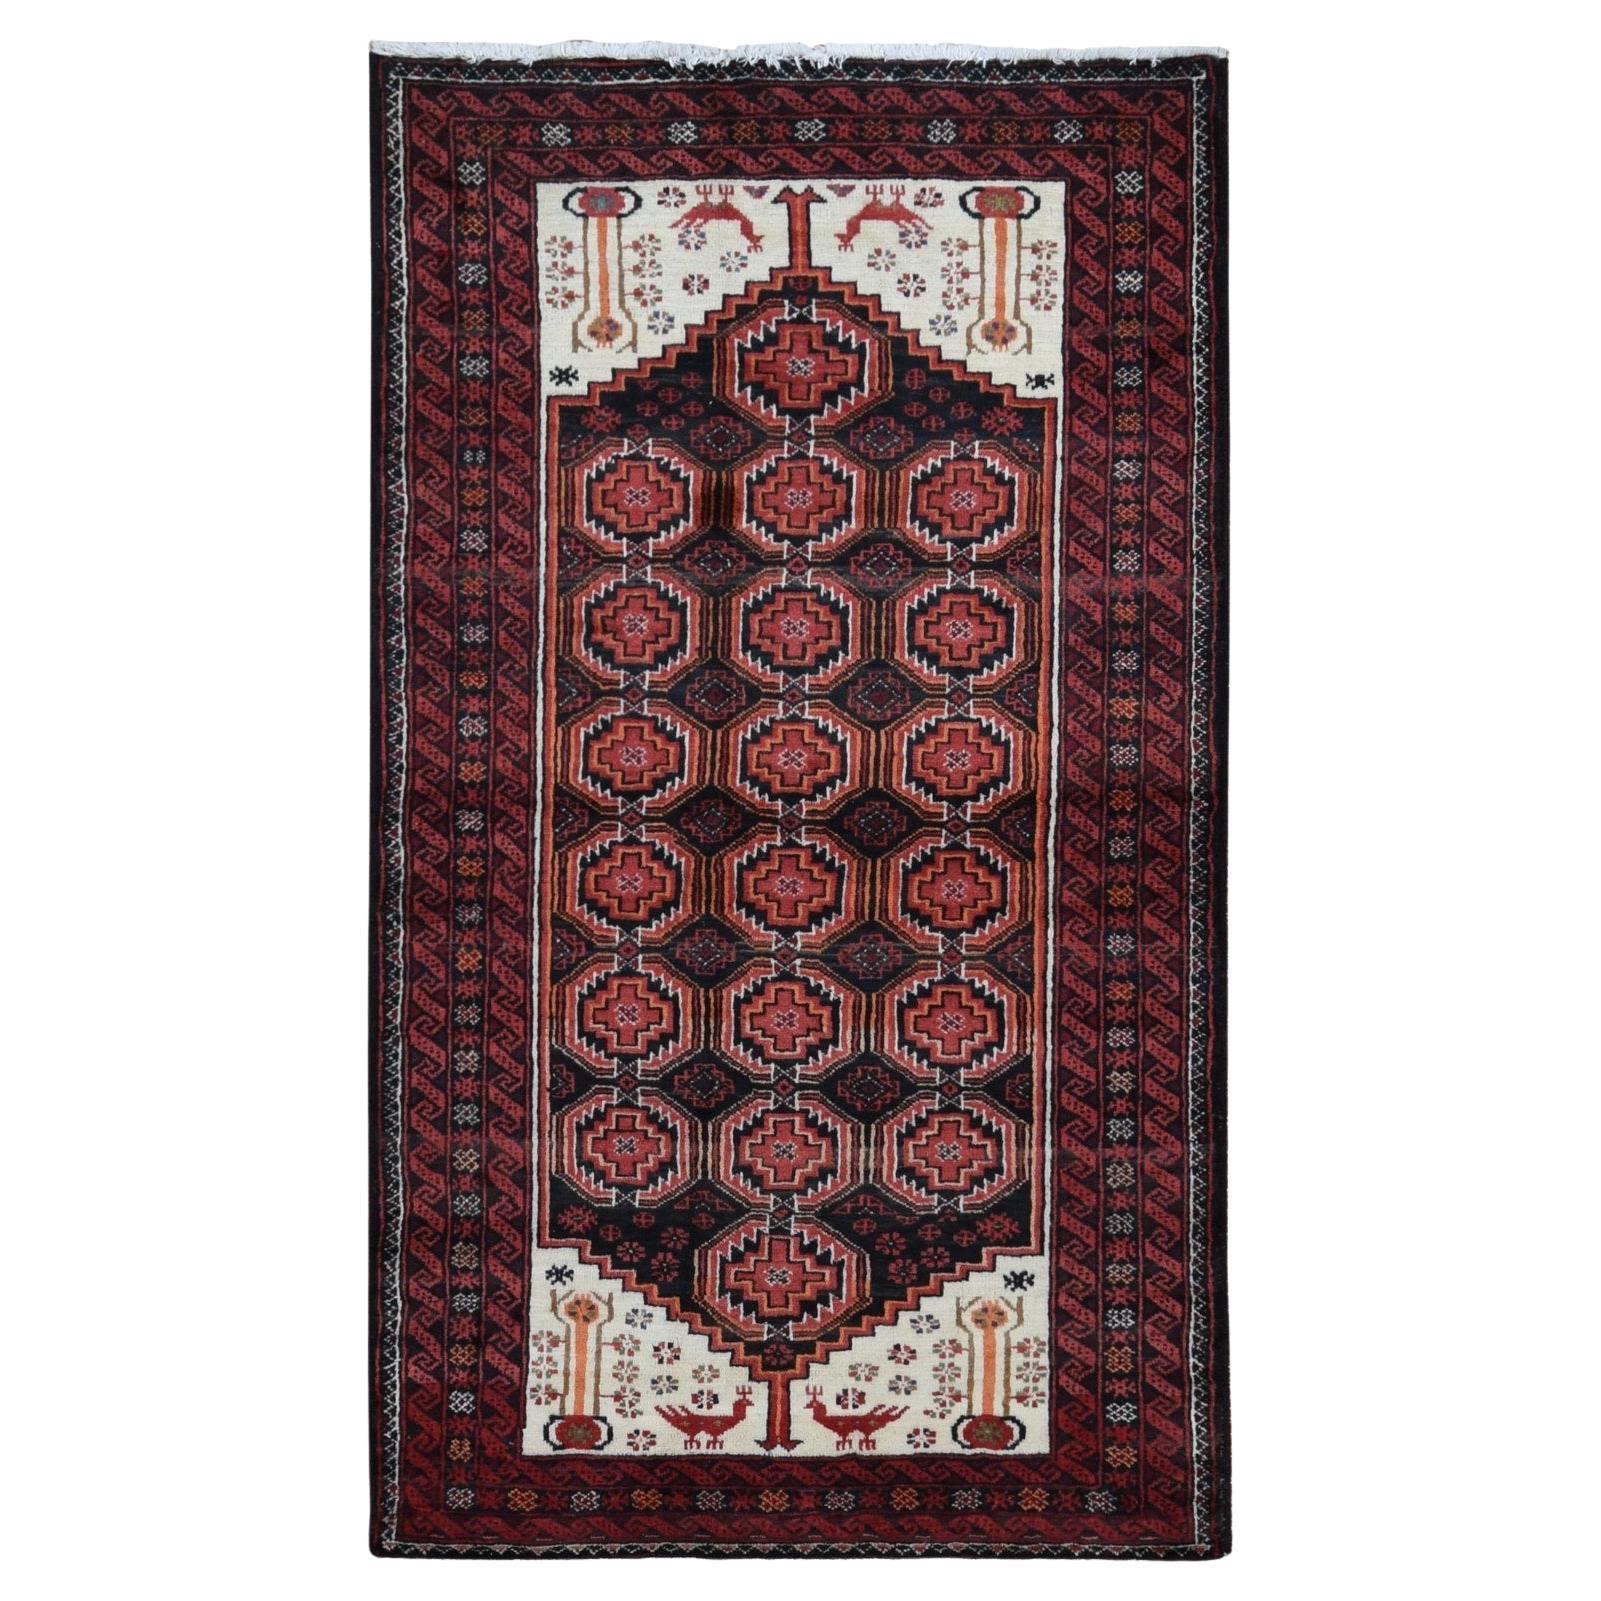 Prismatisch roter persischer, handgeknüpfter Vintage-Teppich aus reiner Wolle, rein, sauber und ohne Verschleiß im Angebot